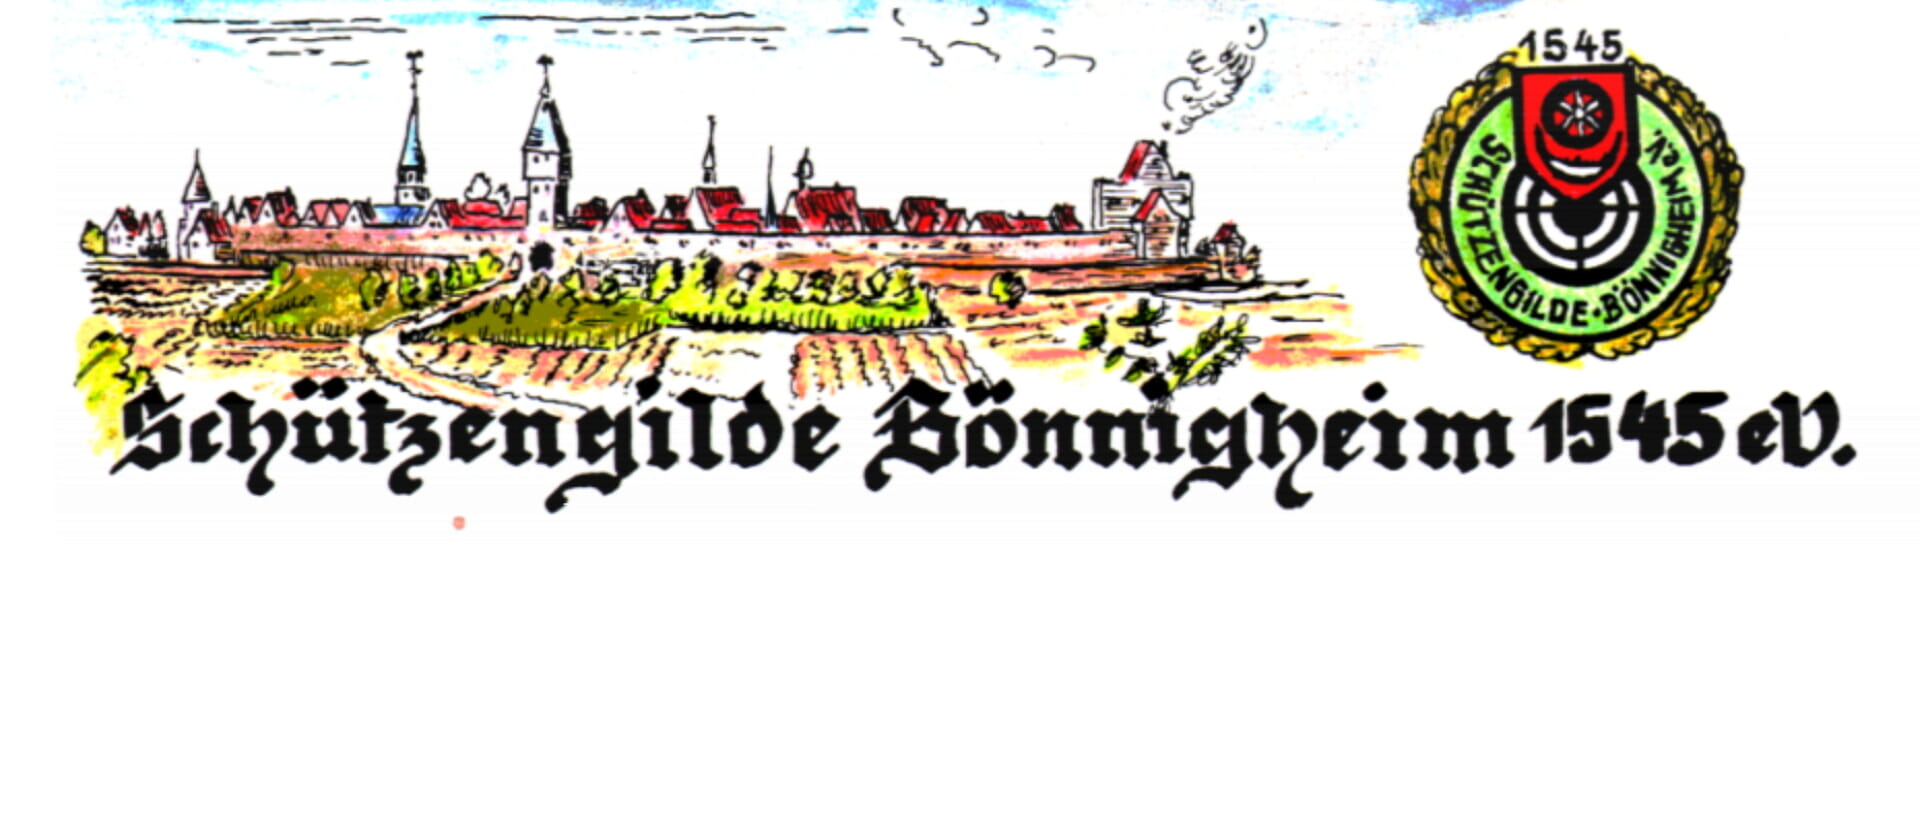 Schützengilde Bönnigheim 1545 e.V.